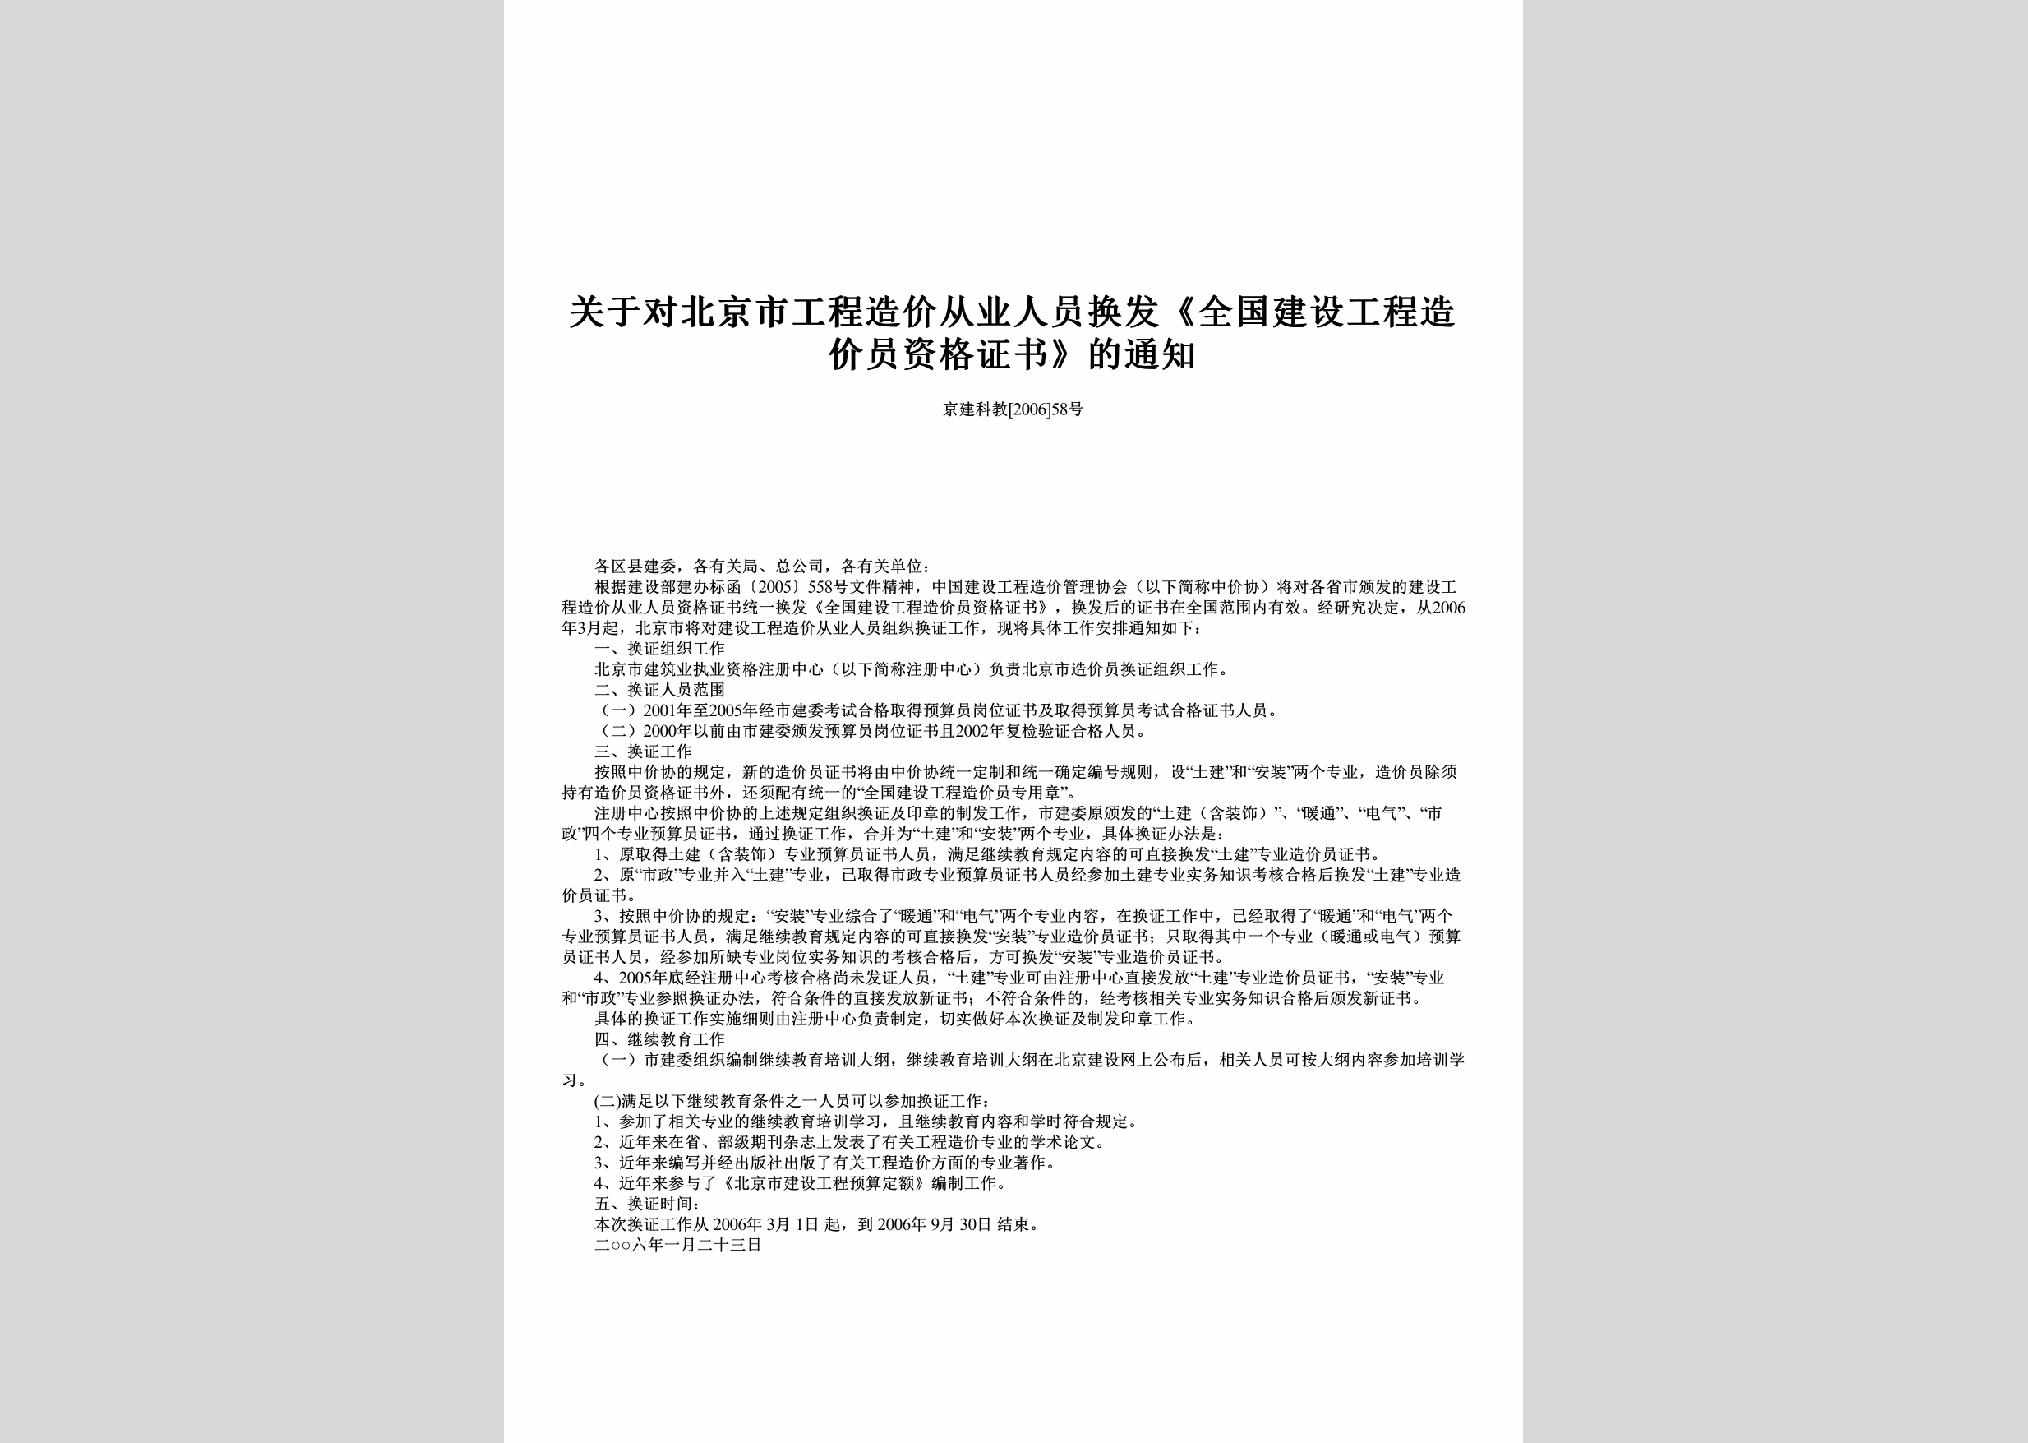 京建科教[2006]58号：关于对北京市工程造价从业人员换发《全国建设工程造价员资格证书》的通知